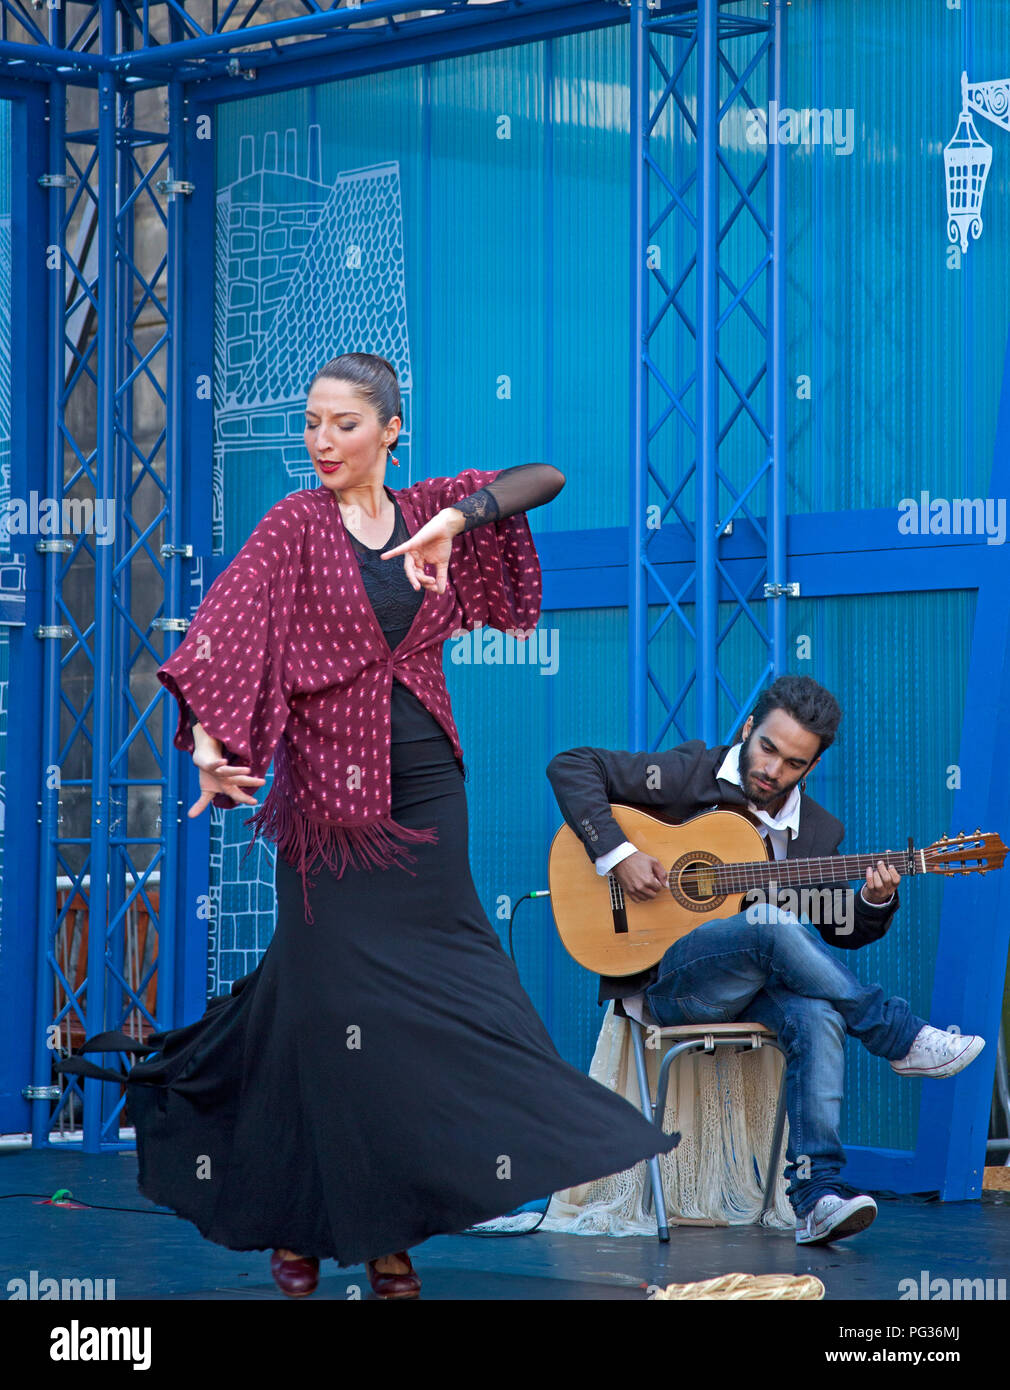 Edinburgh, Scotland, UK 23 août 2018. Festival Fringe d'Édimbourg, du Royal Mile, sur le marché, il n'y était un fougueux de la danse et de la guitare espagnole de rendement racines Flamenco. Banque D'Images